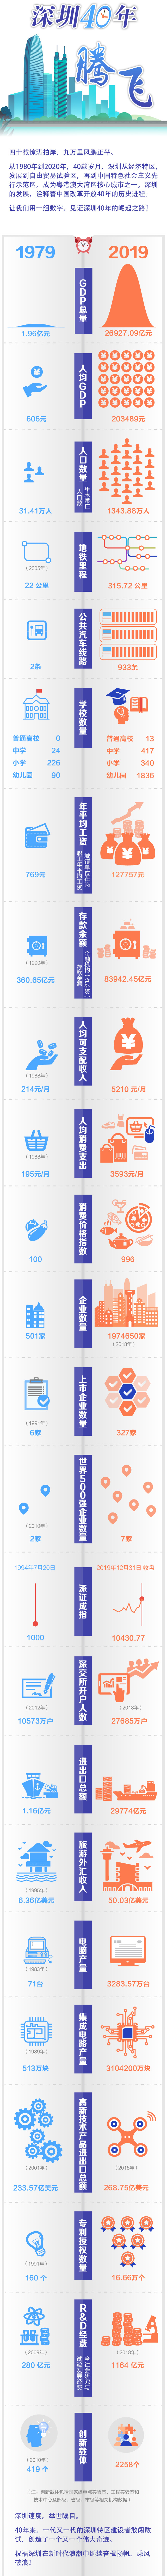 【高质量发展高地】 一图看懂深圳经济特区40年巨变